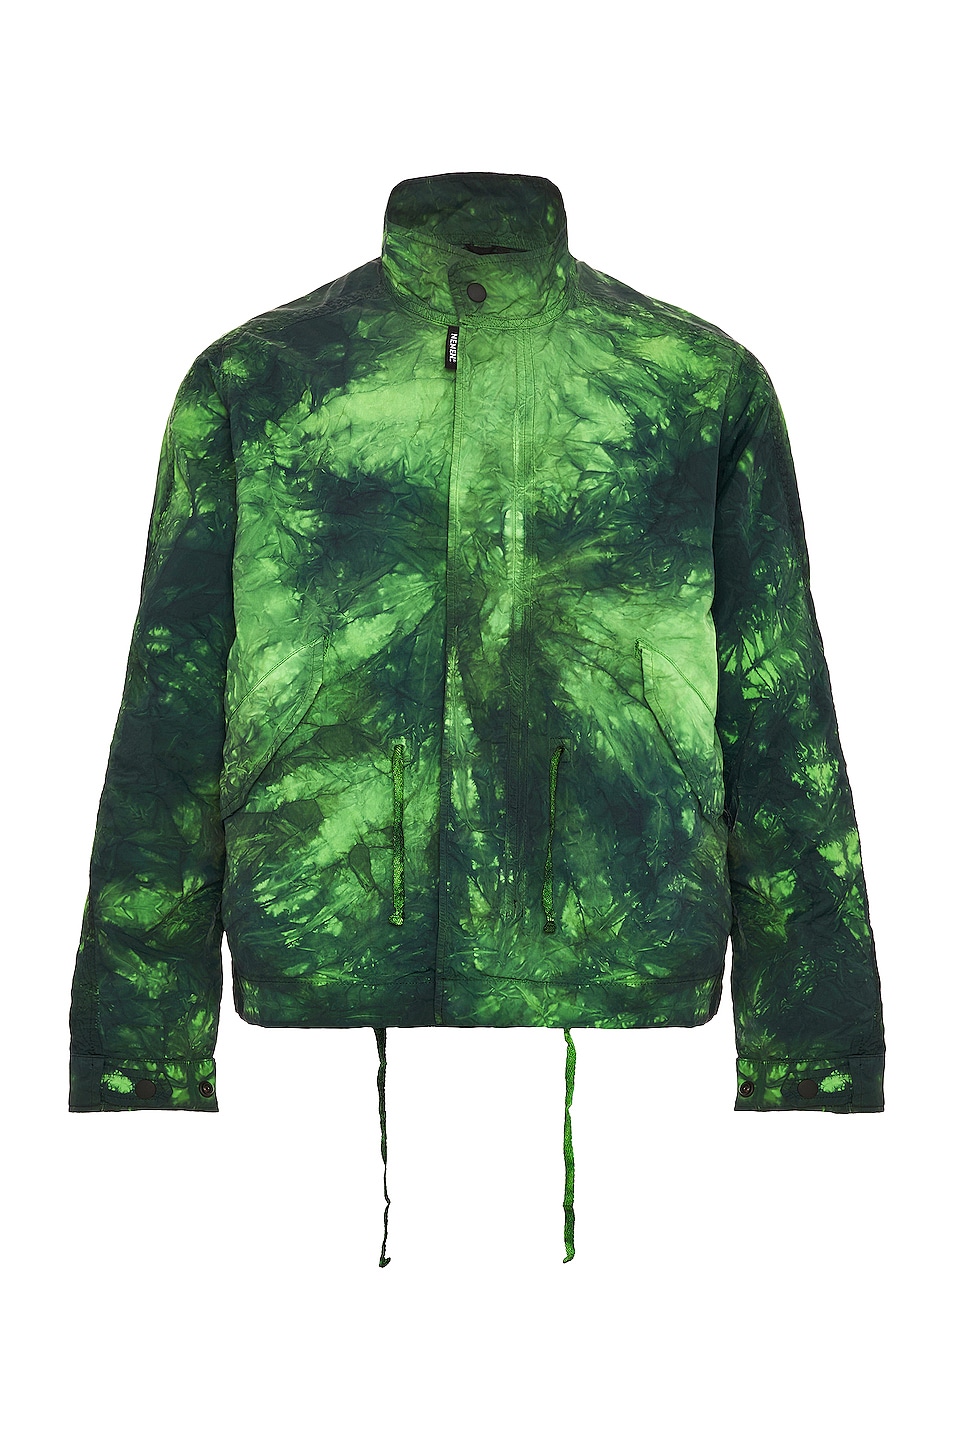 Image 1 of NemeN Kane Tie Dye Cropped Jacket in Leaf Green Tie Dye